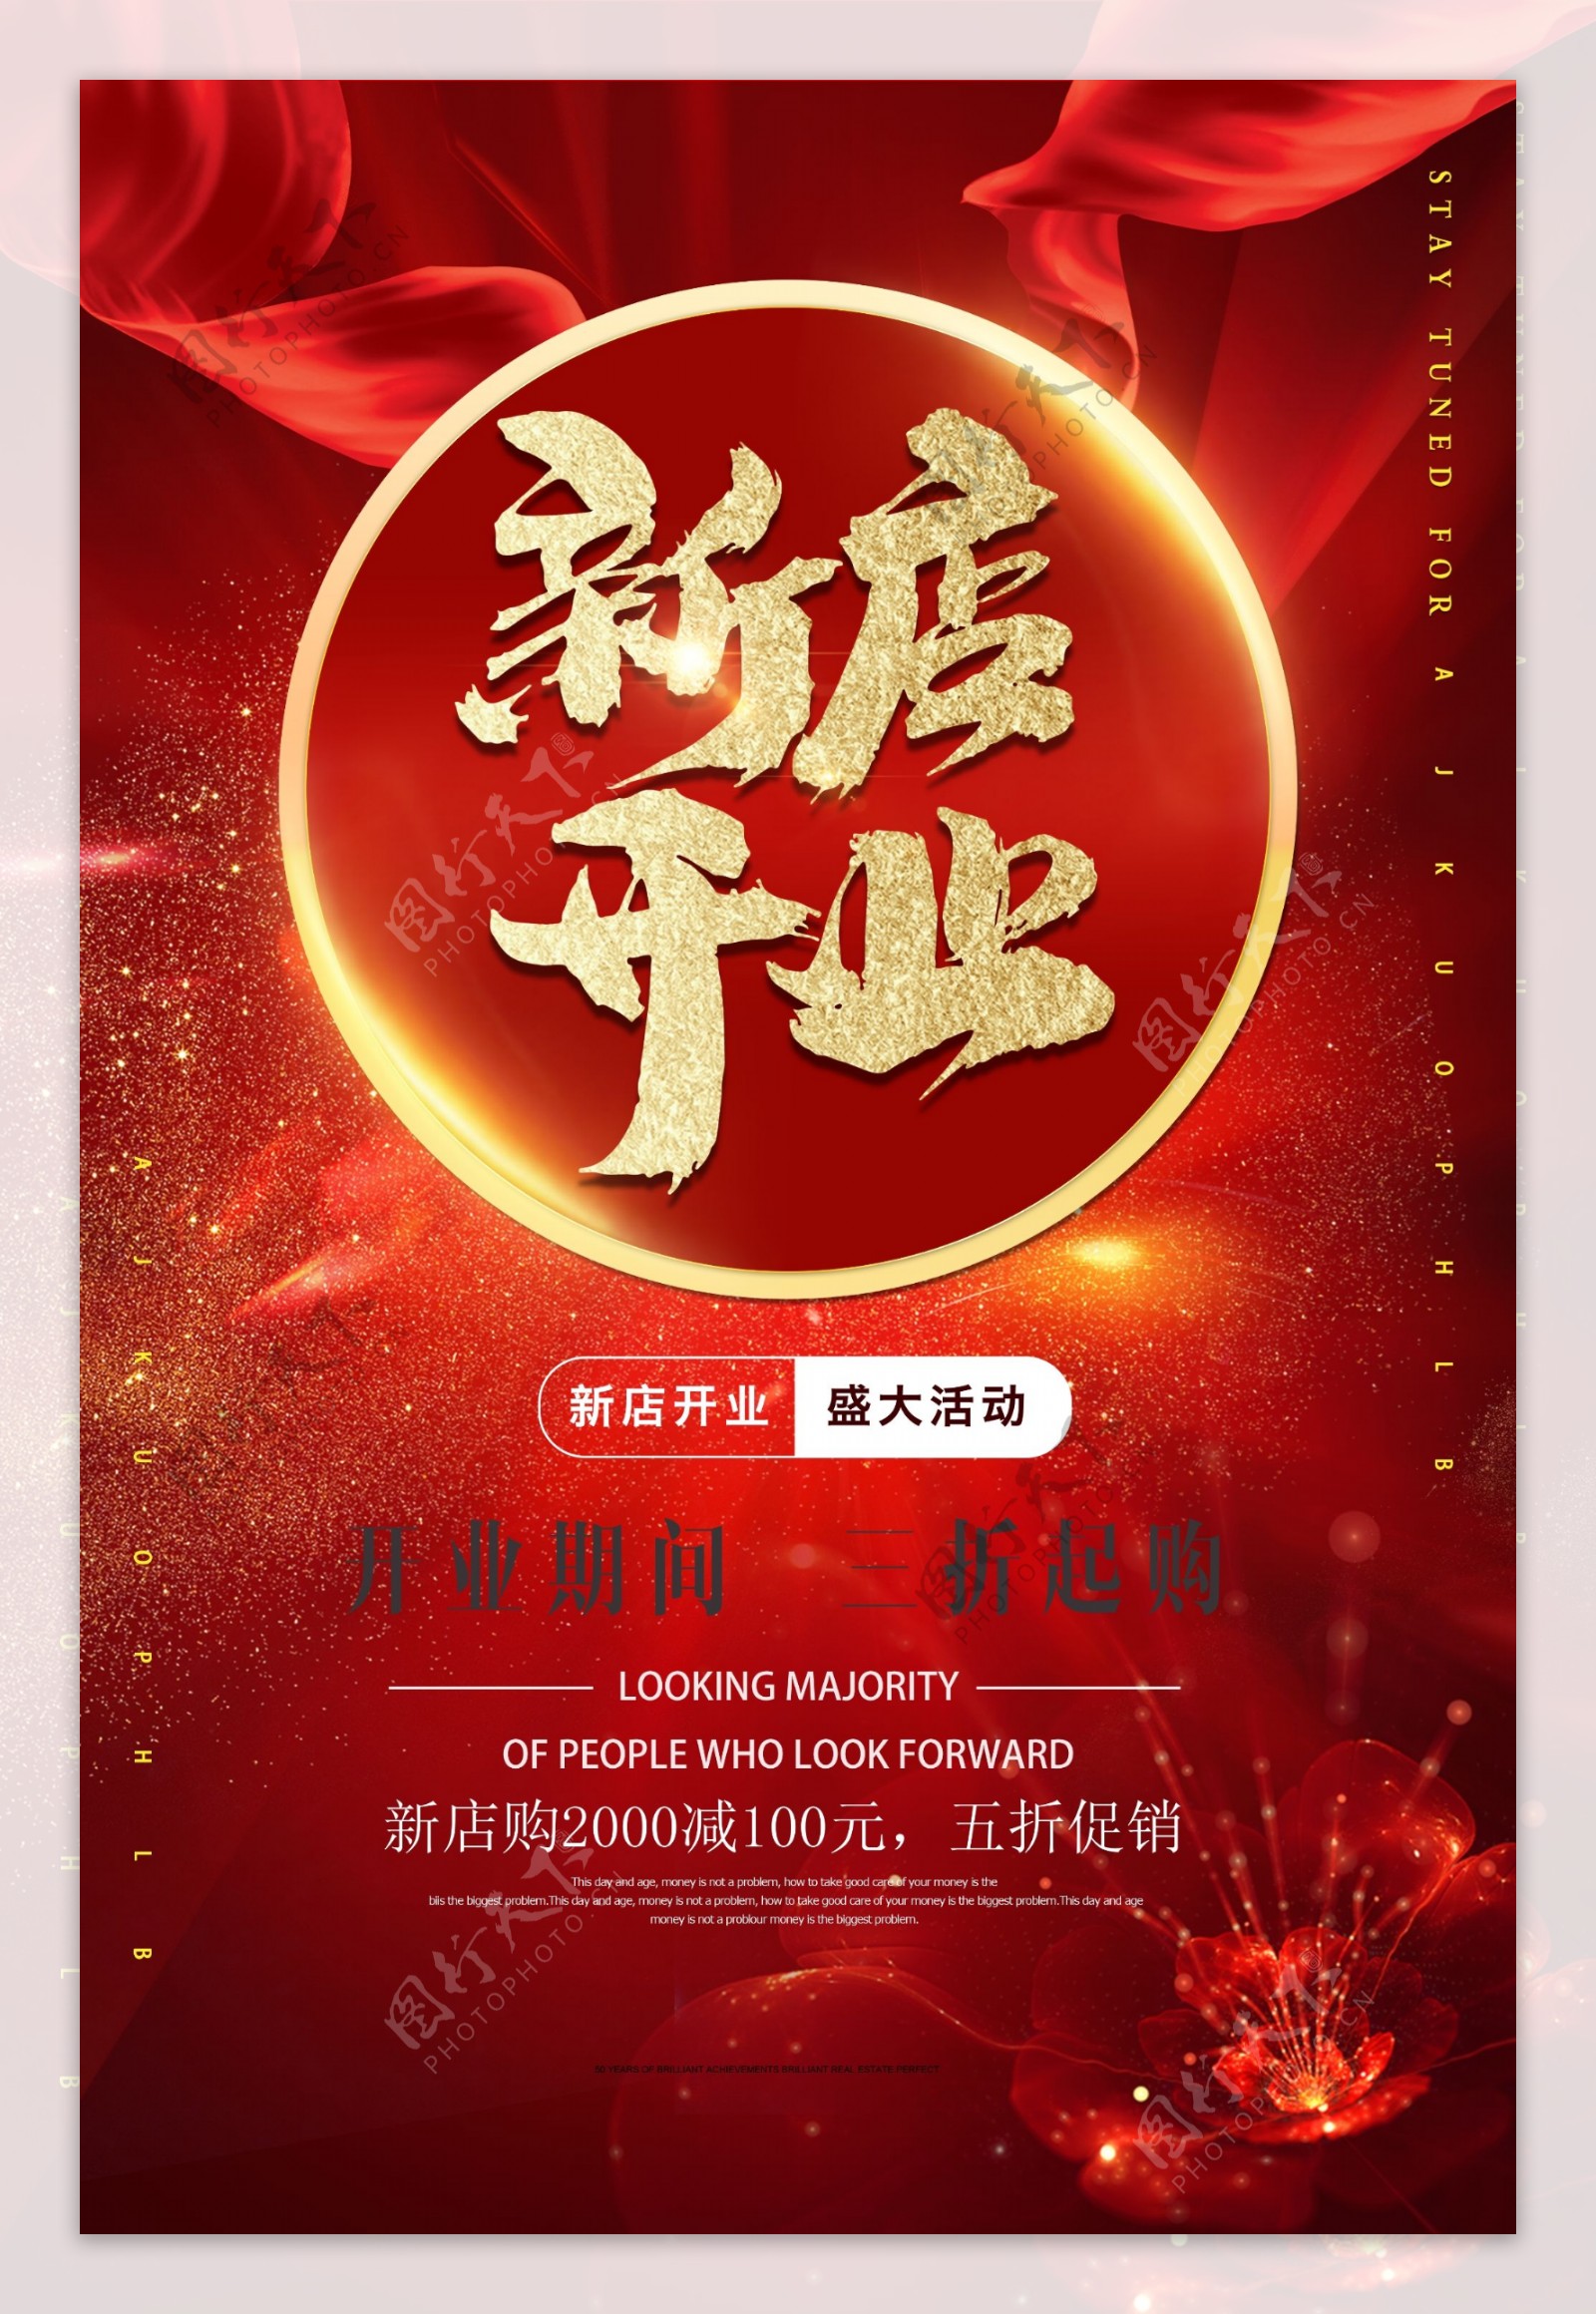 红色喜庆新店开业海报设计